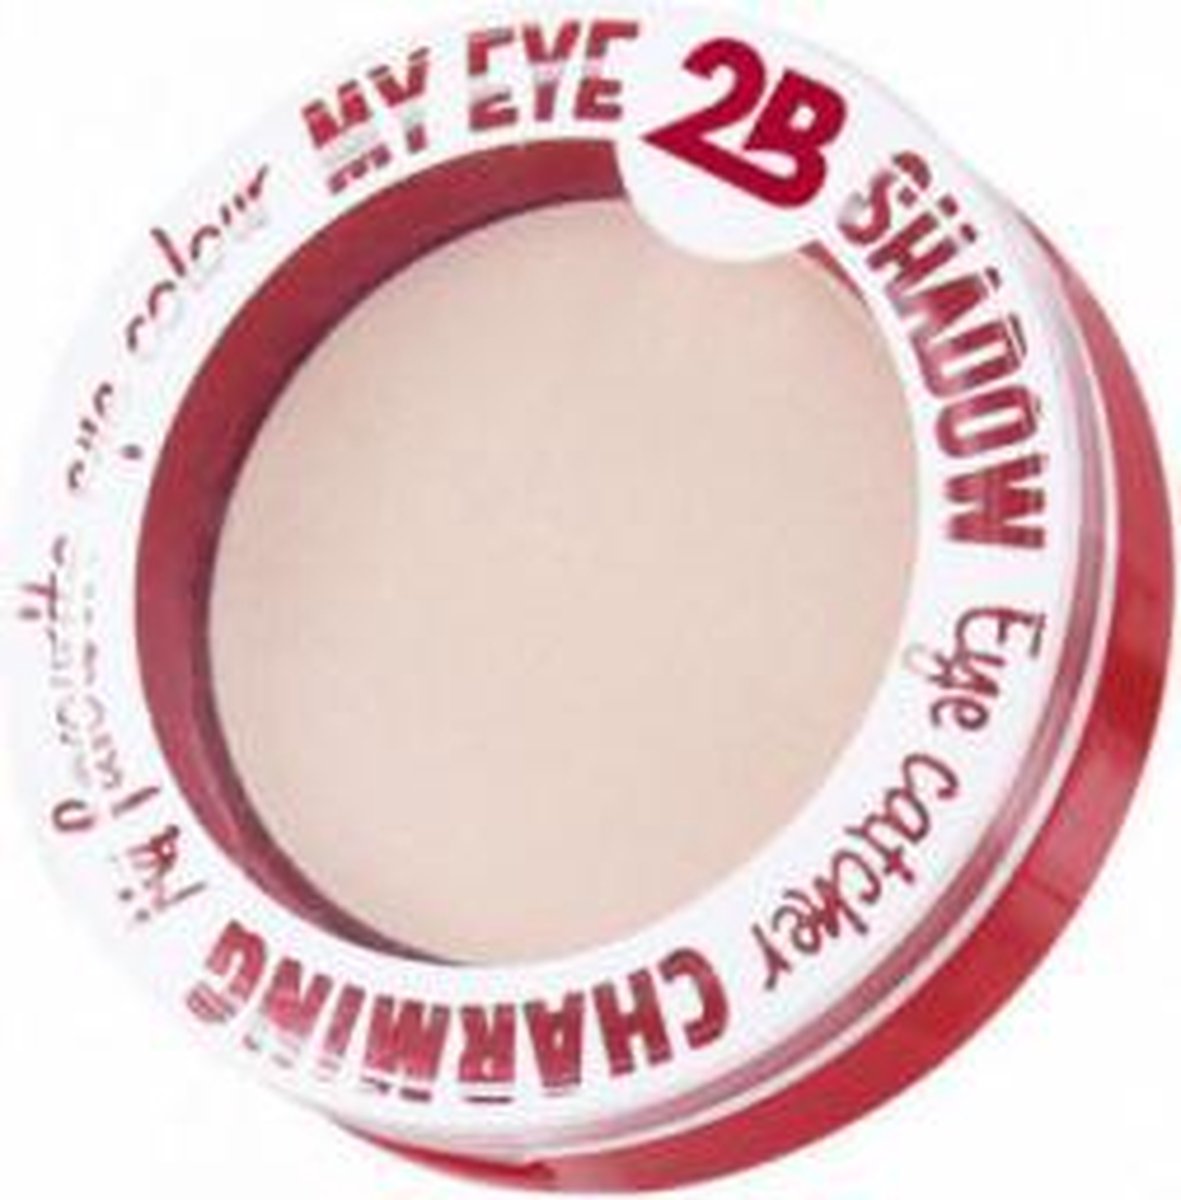 2B-oogschaduw My eyeshadow 52 peach